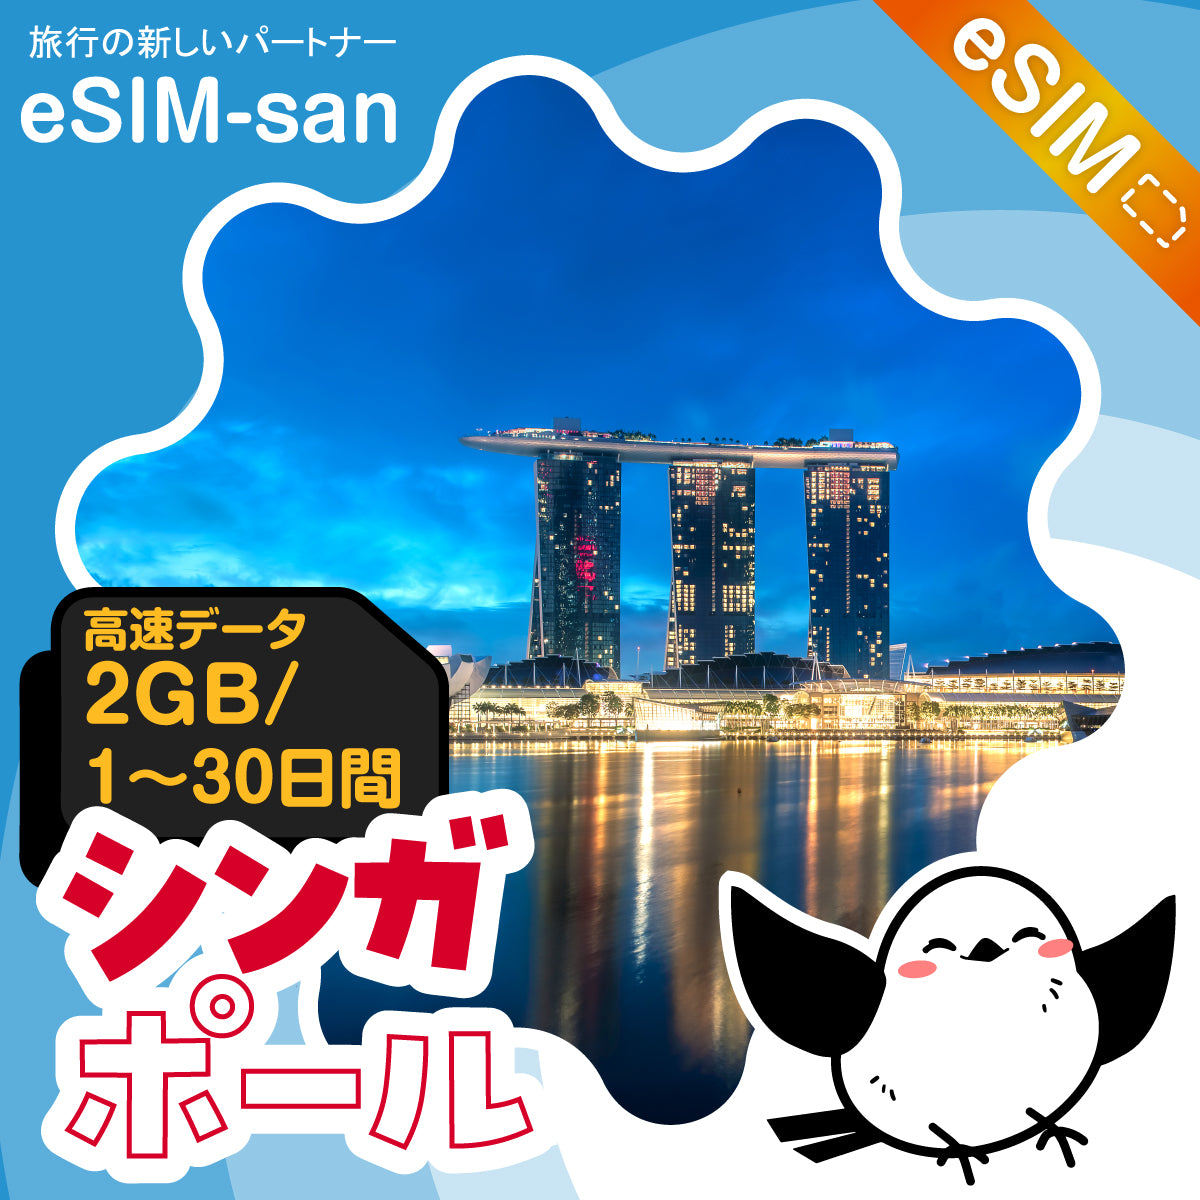 シンガポールeSIMの2GB/dayプラン画像_eSIM-san